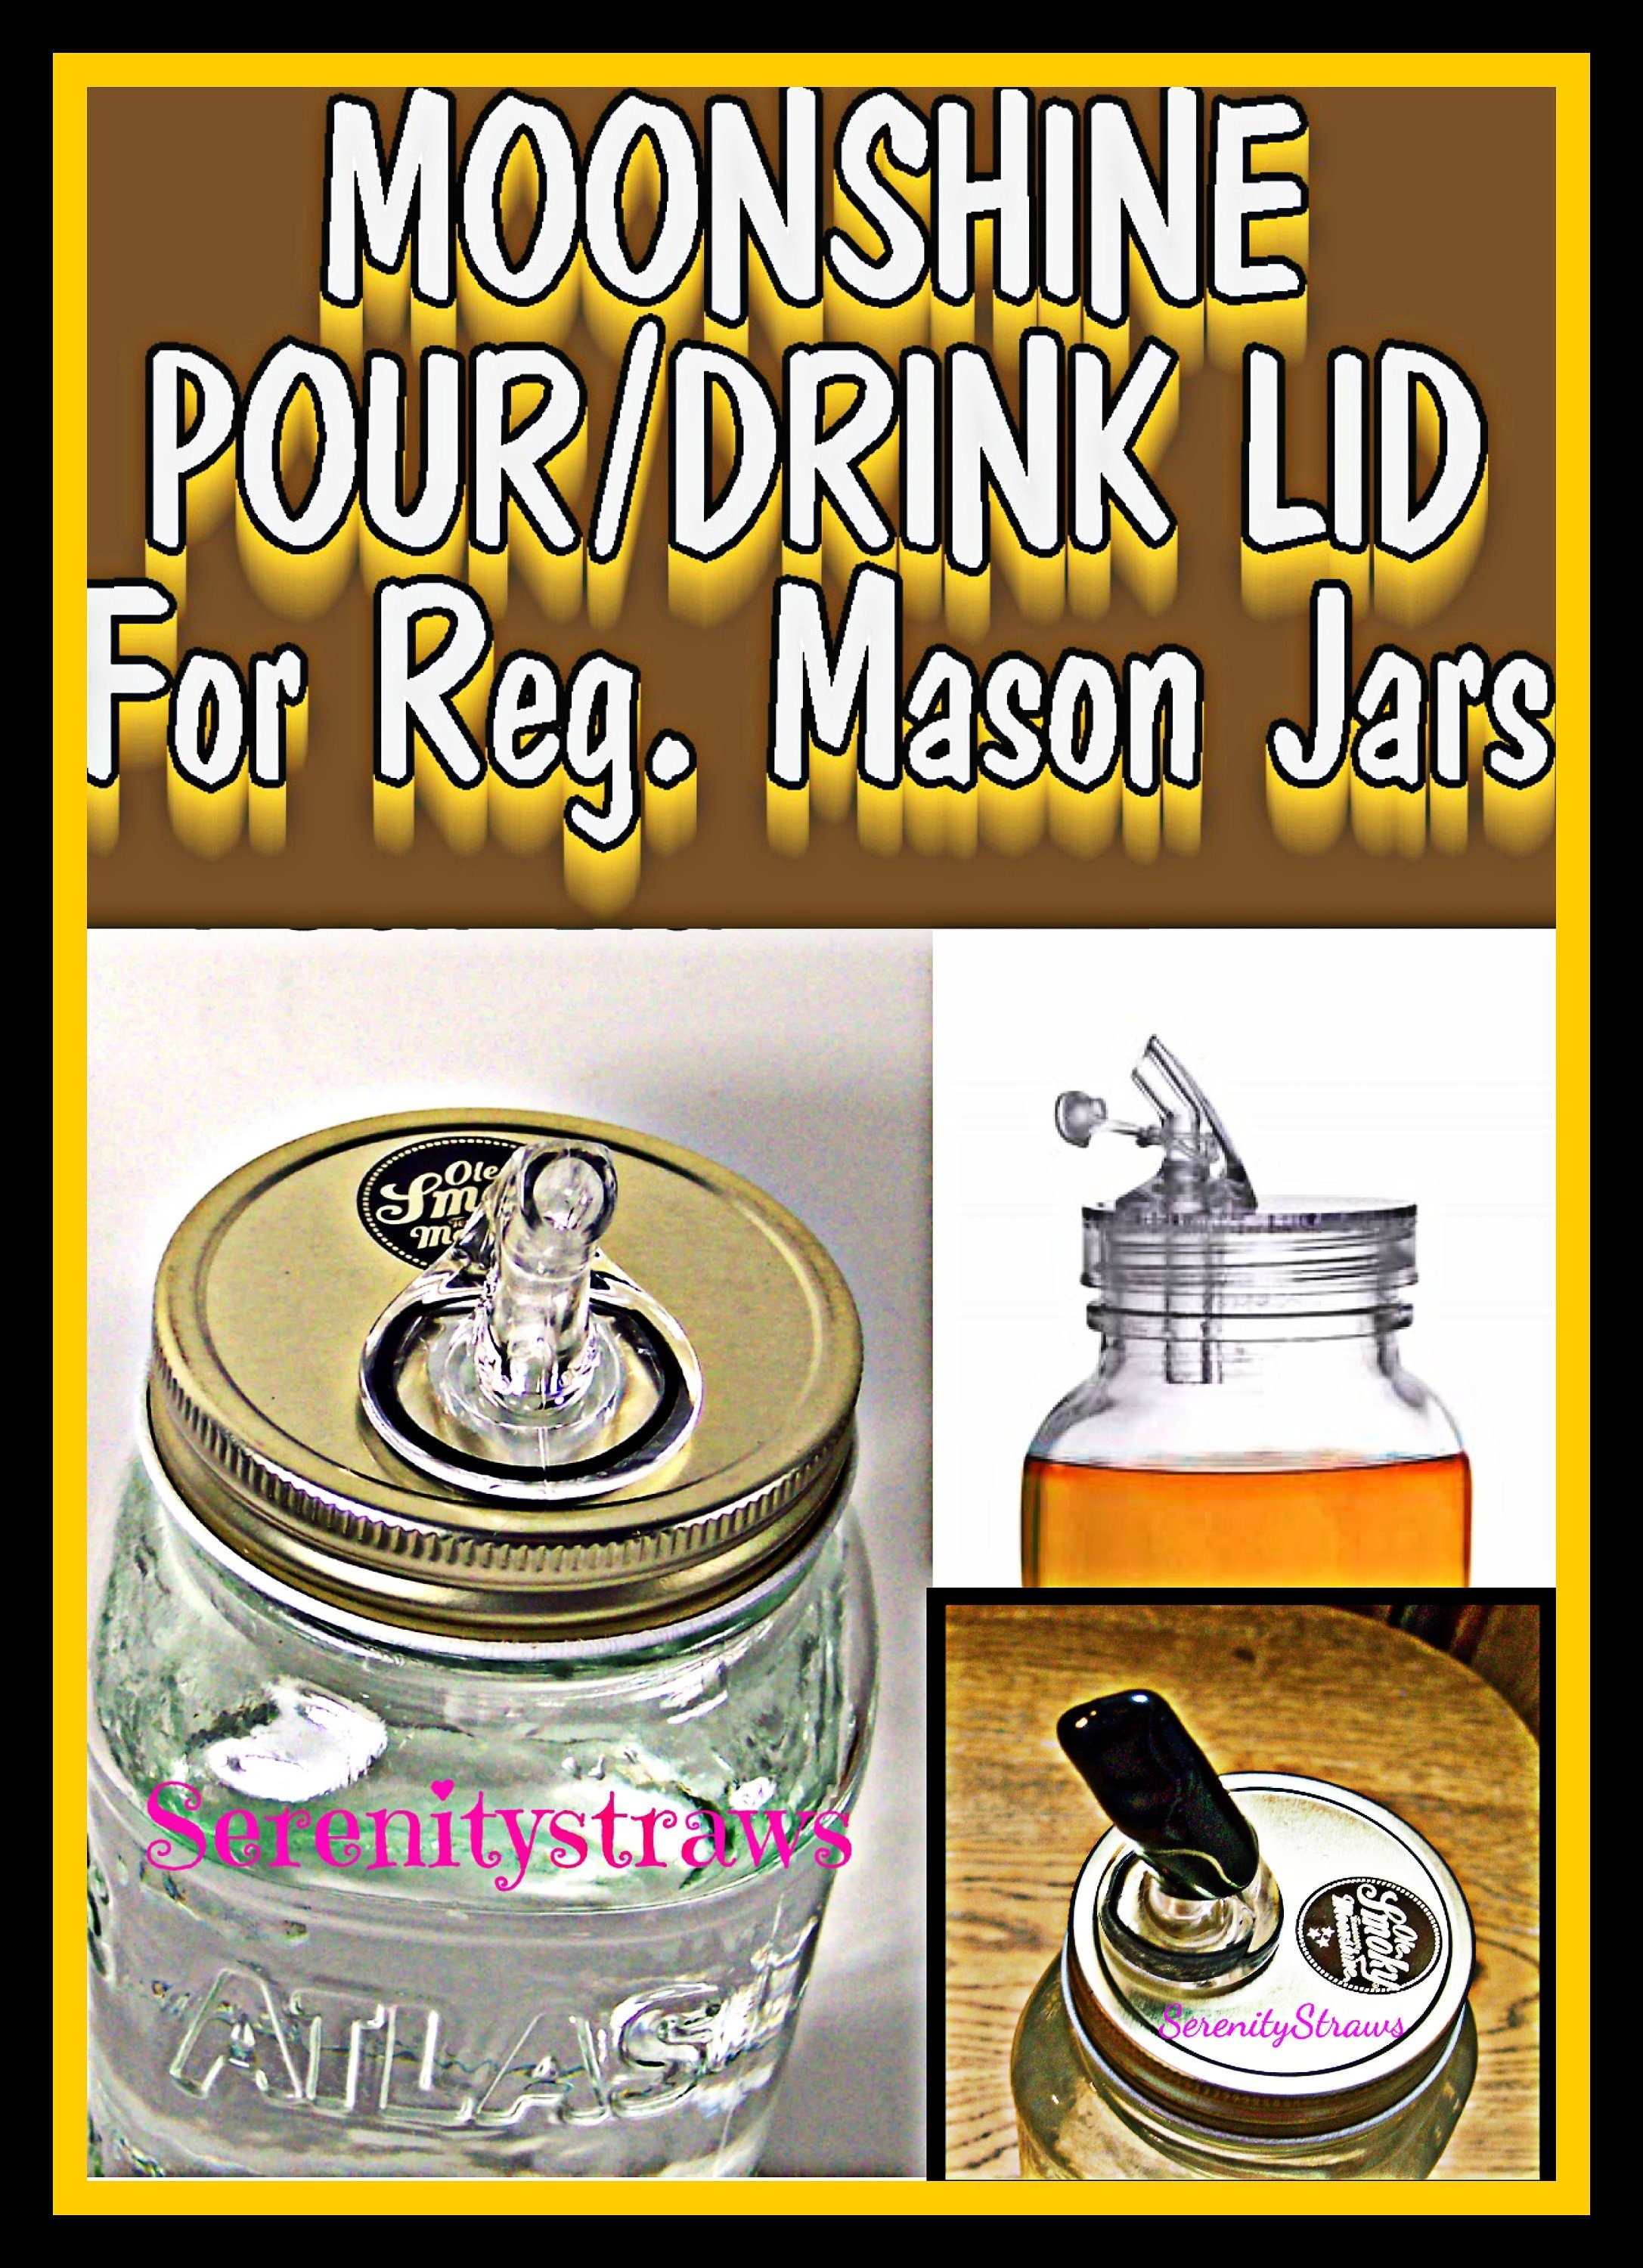 2pec Mason Jars Pour Spout Lids with Dust Caps Oil Salad Dispenser Top Fit  Regular Mouth 